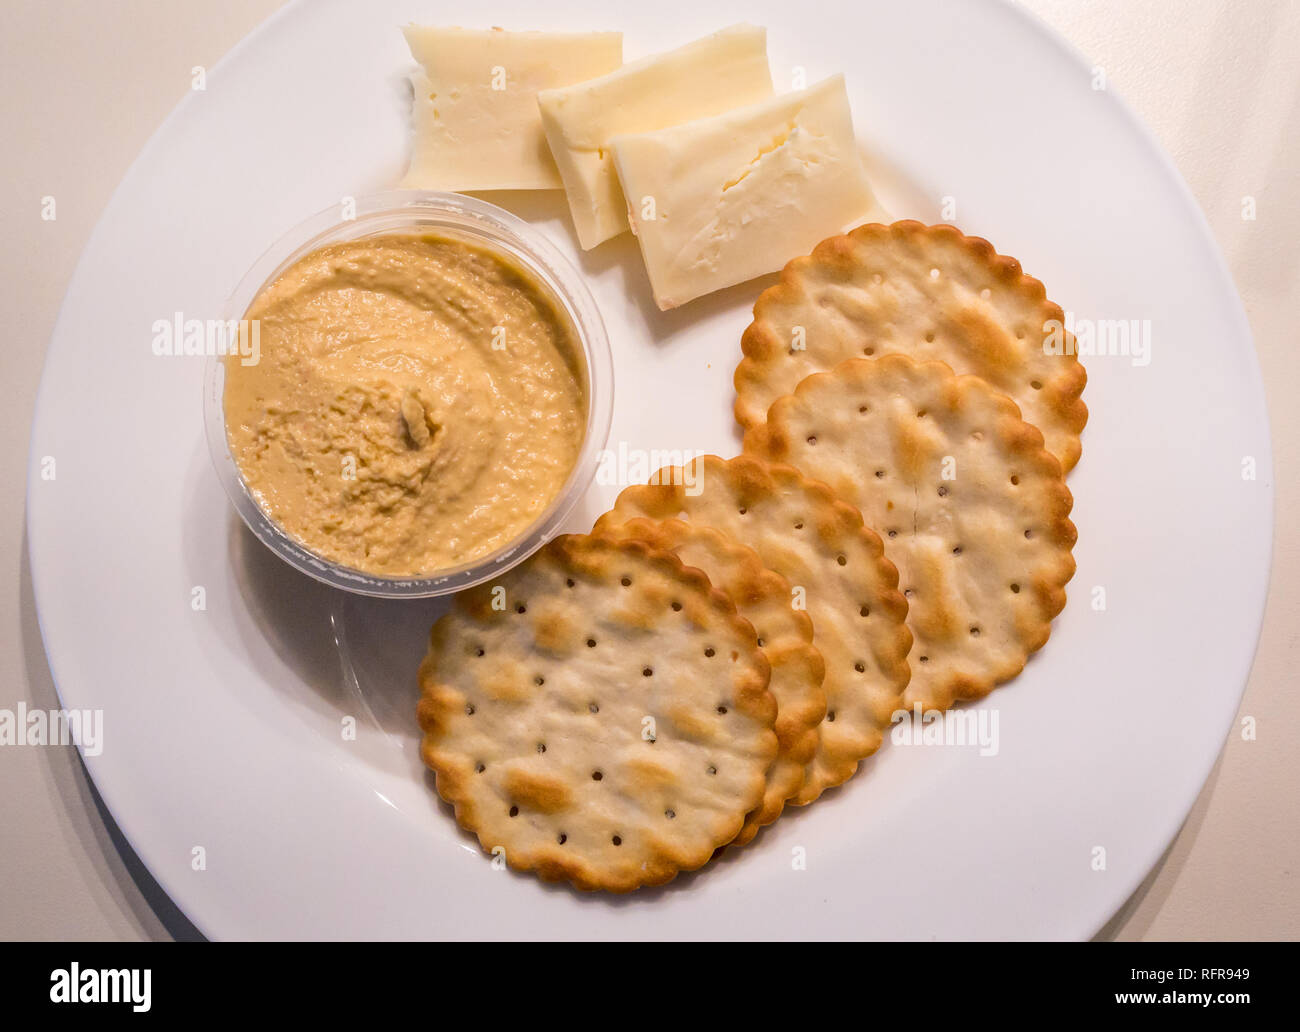 In prossimità della piastra bianca con snack di round crackers, hummus e il formaggio cheddar Foto Stock